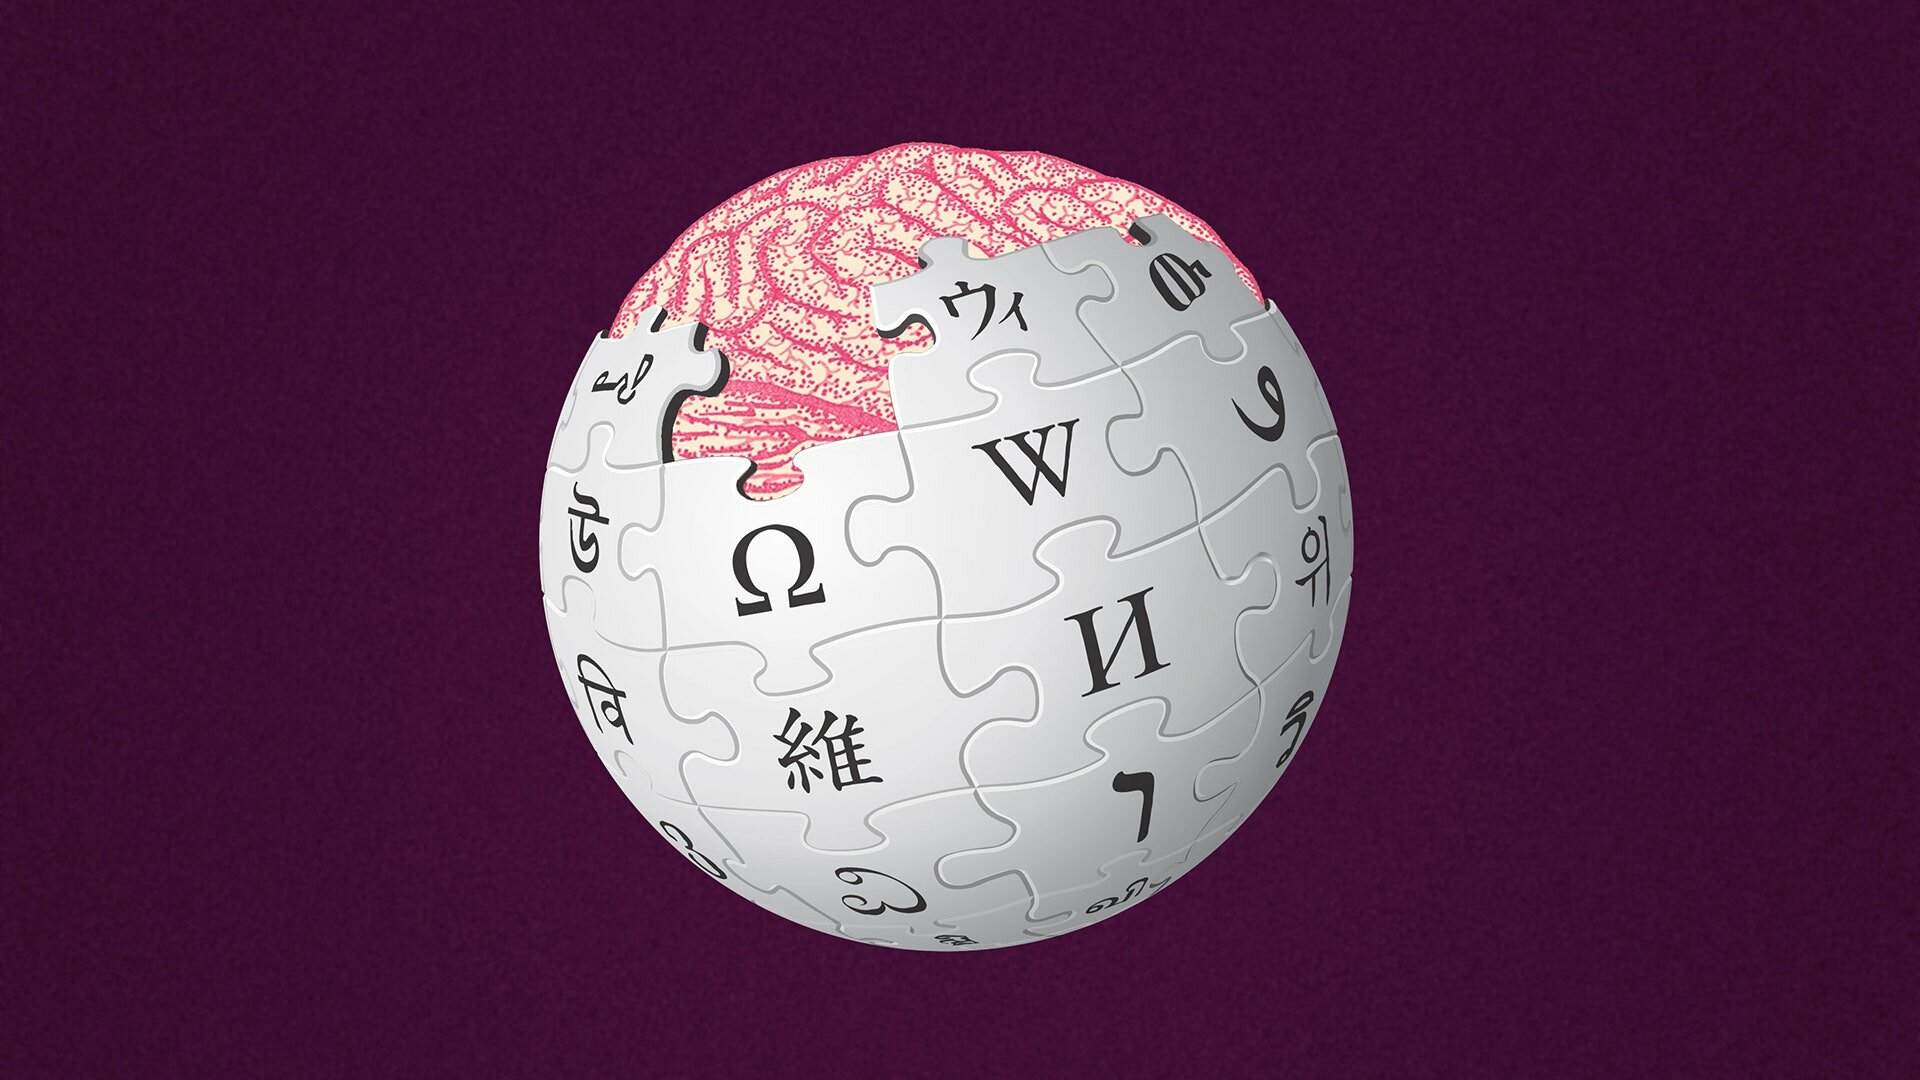 Wikipedia обновила дизайн впервые за 10 лет. Свежо, но удобно ли?